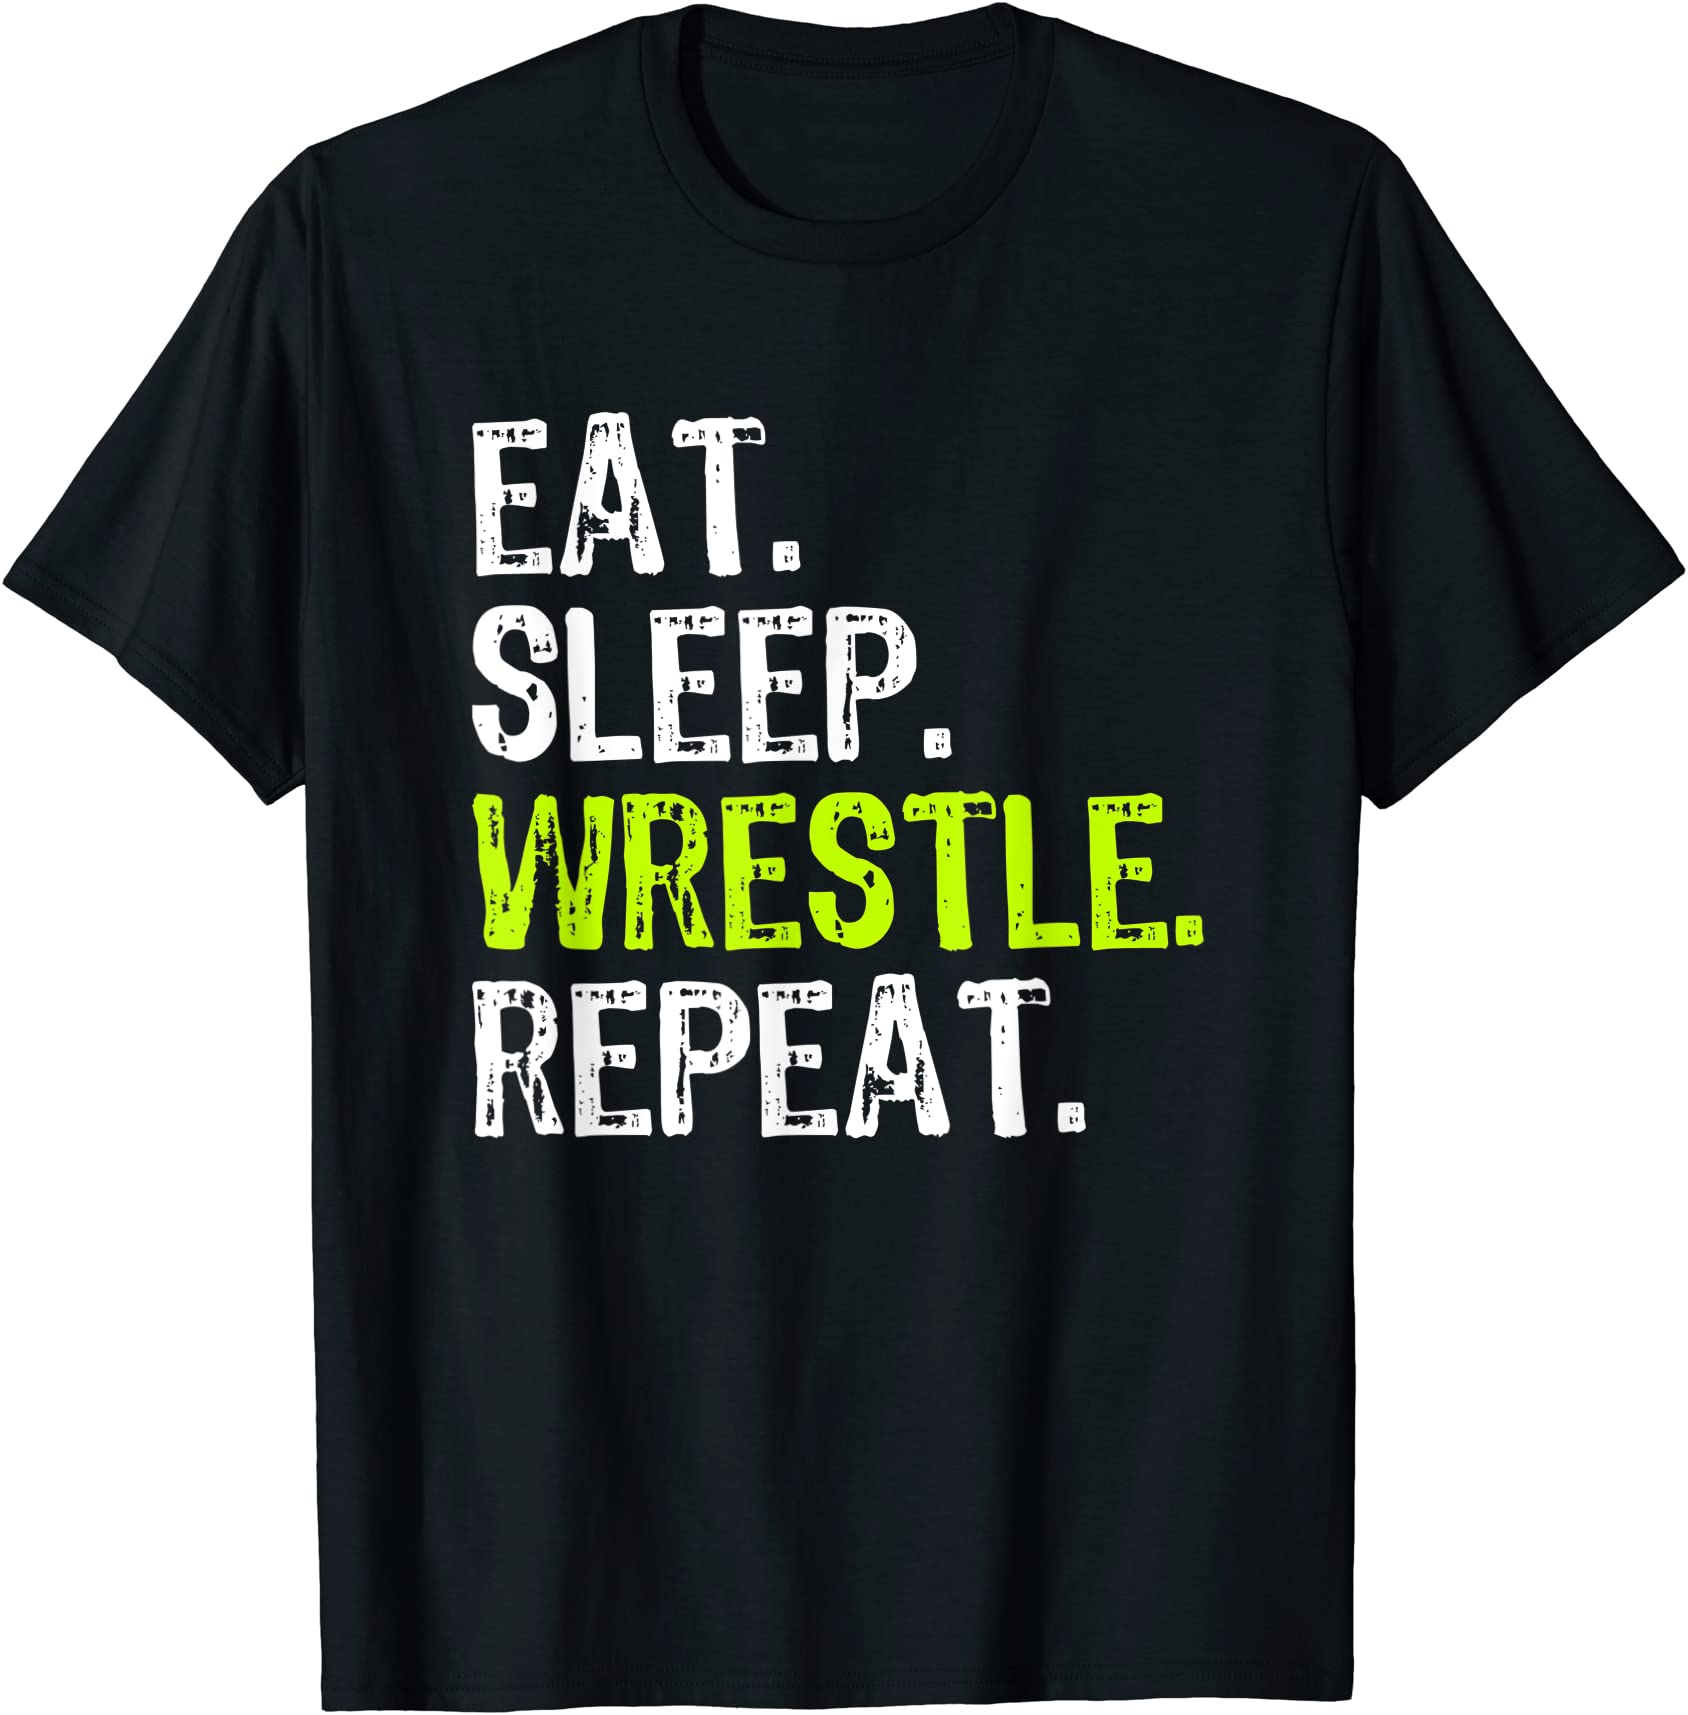 eat sleep wrestle repeat wrestling wrestler funny t shirt men - Buy t ...